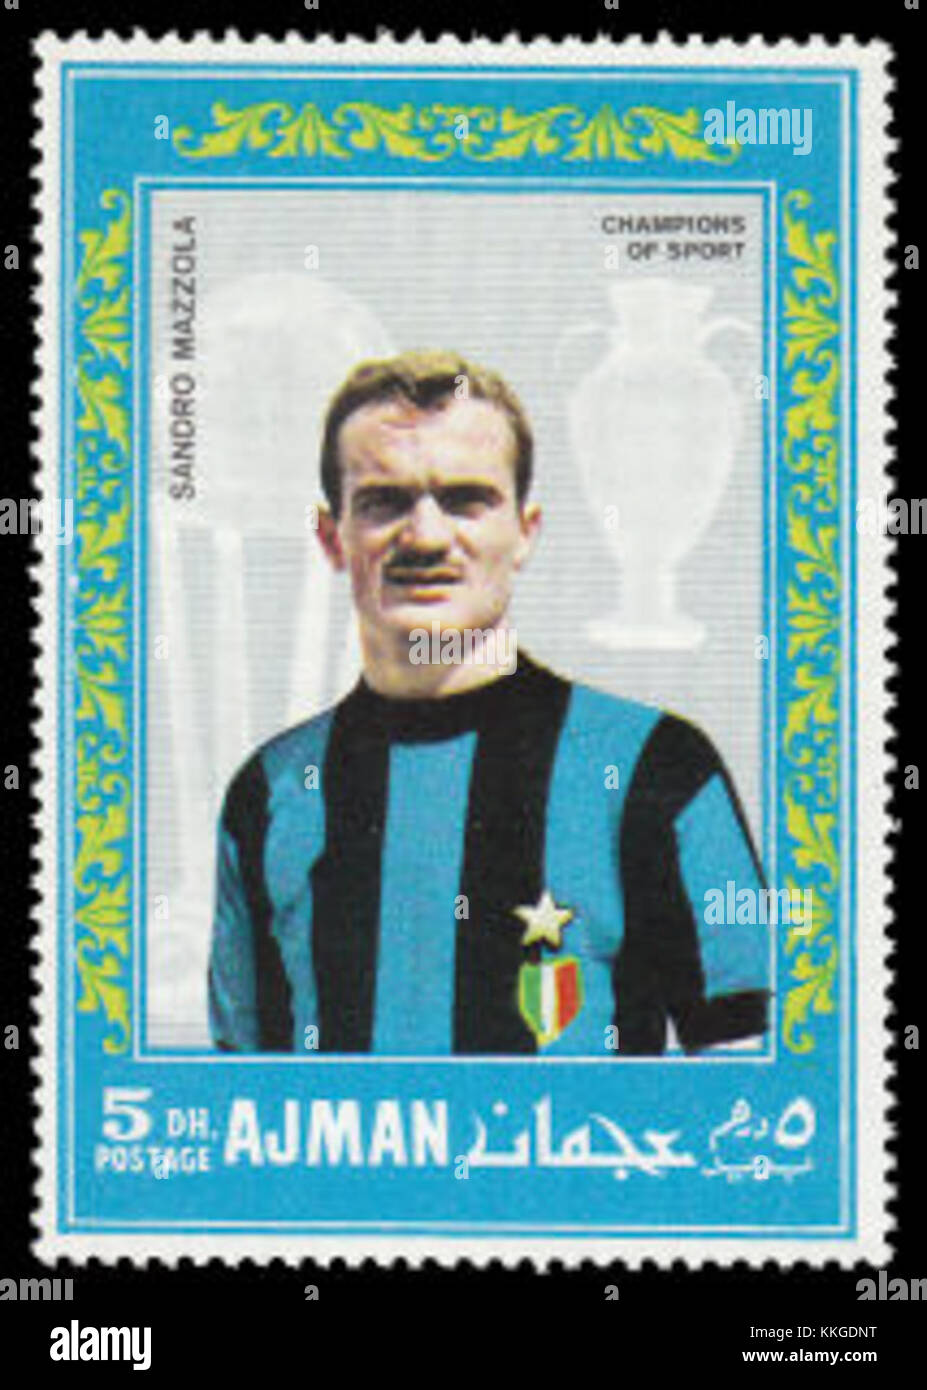 Ajman 1968-08-25 stamp - Sandro Mazzola Stock Photo